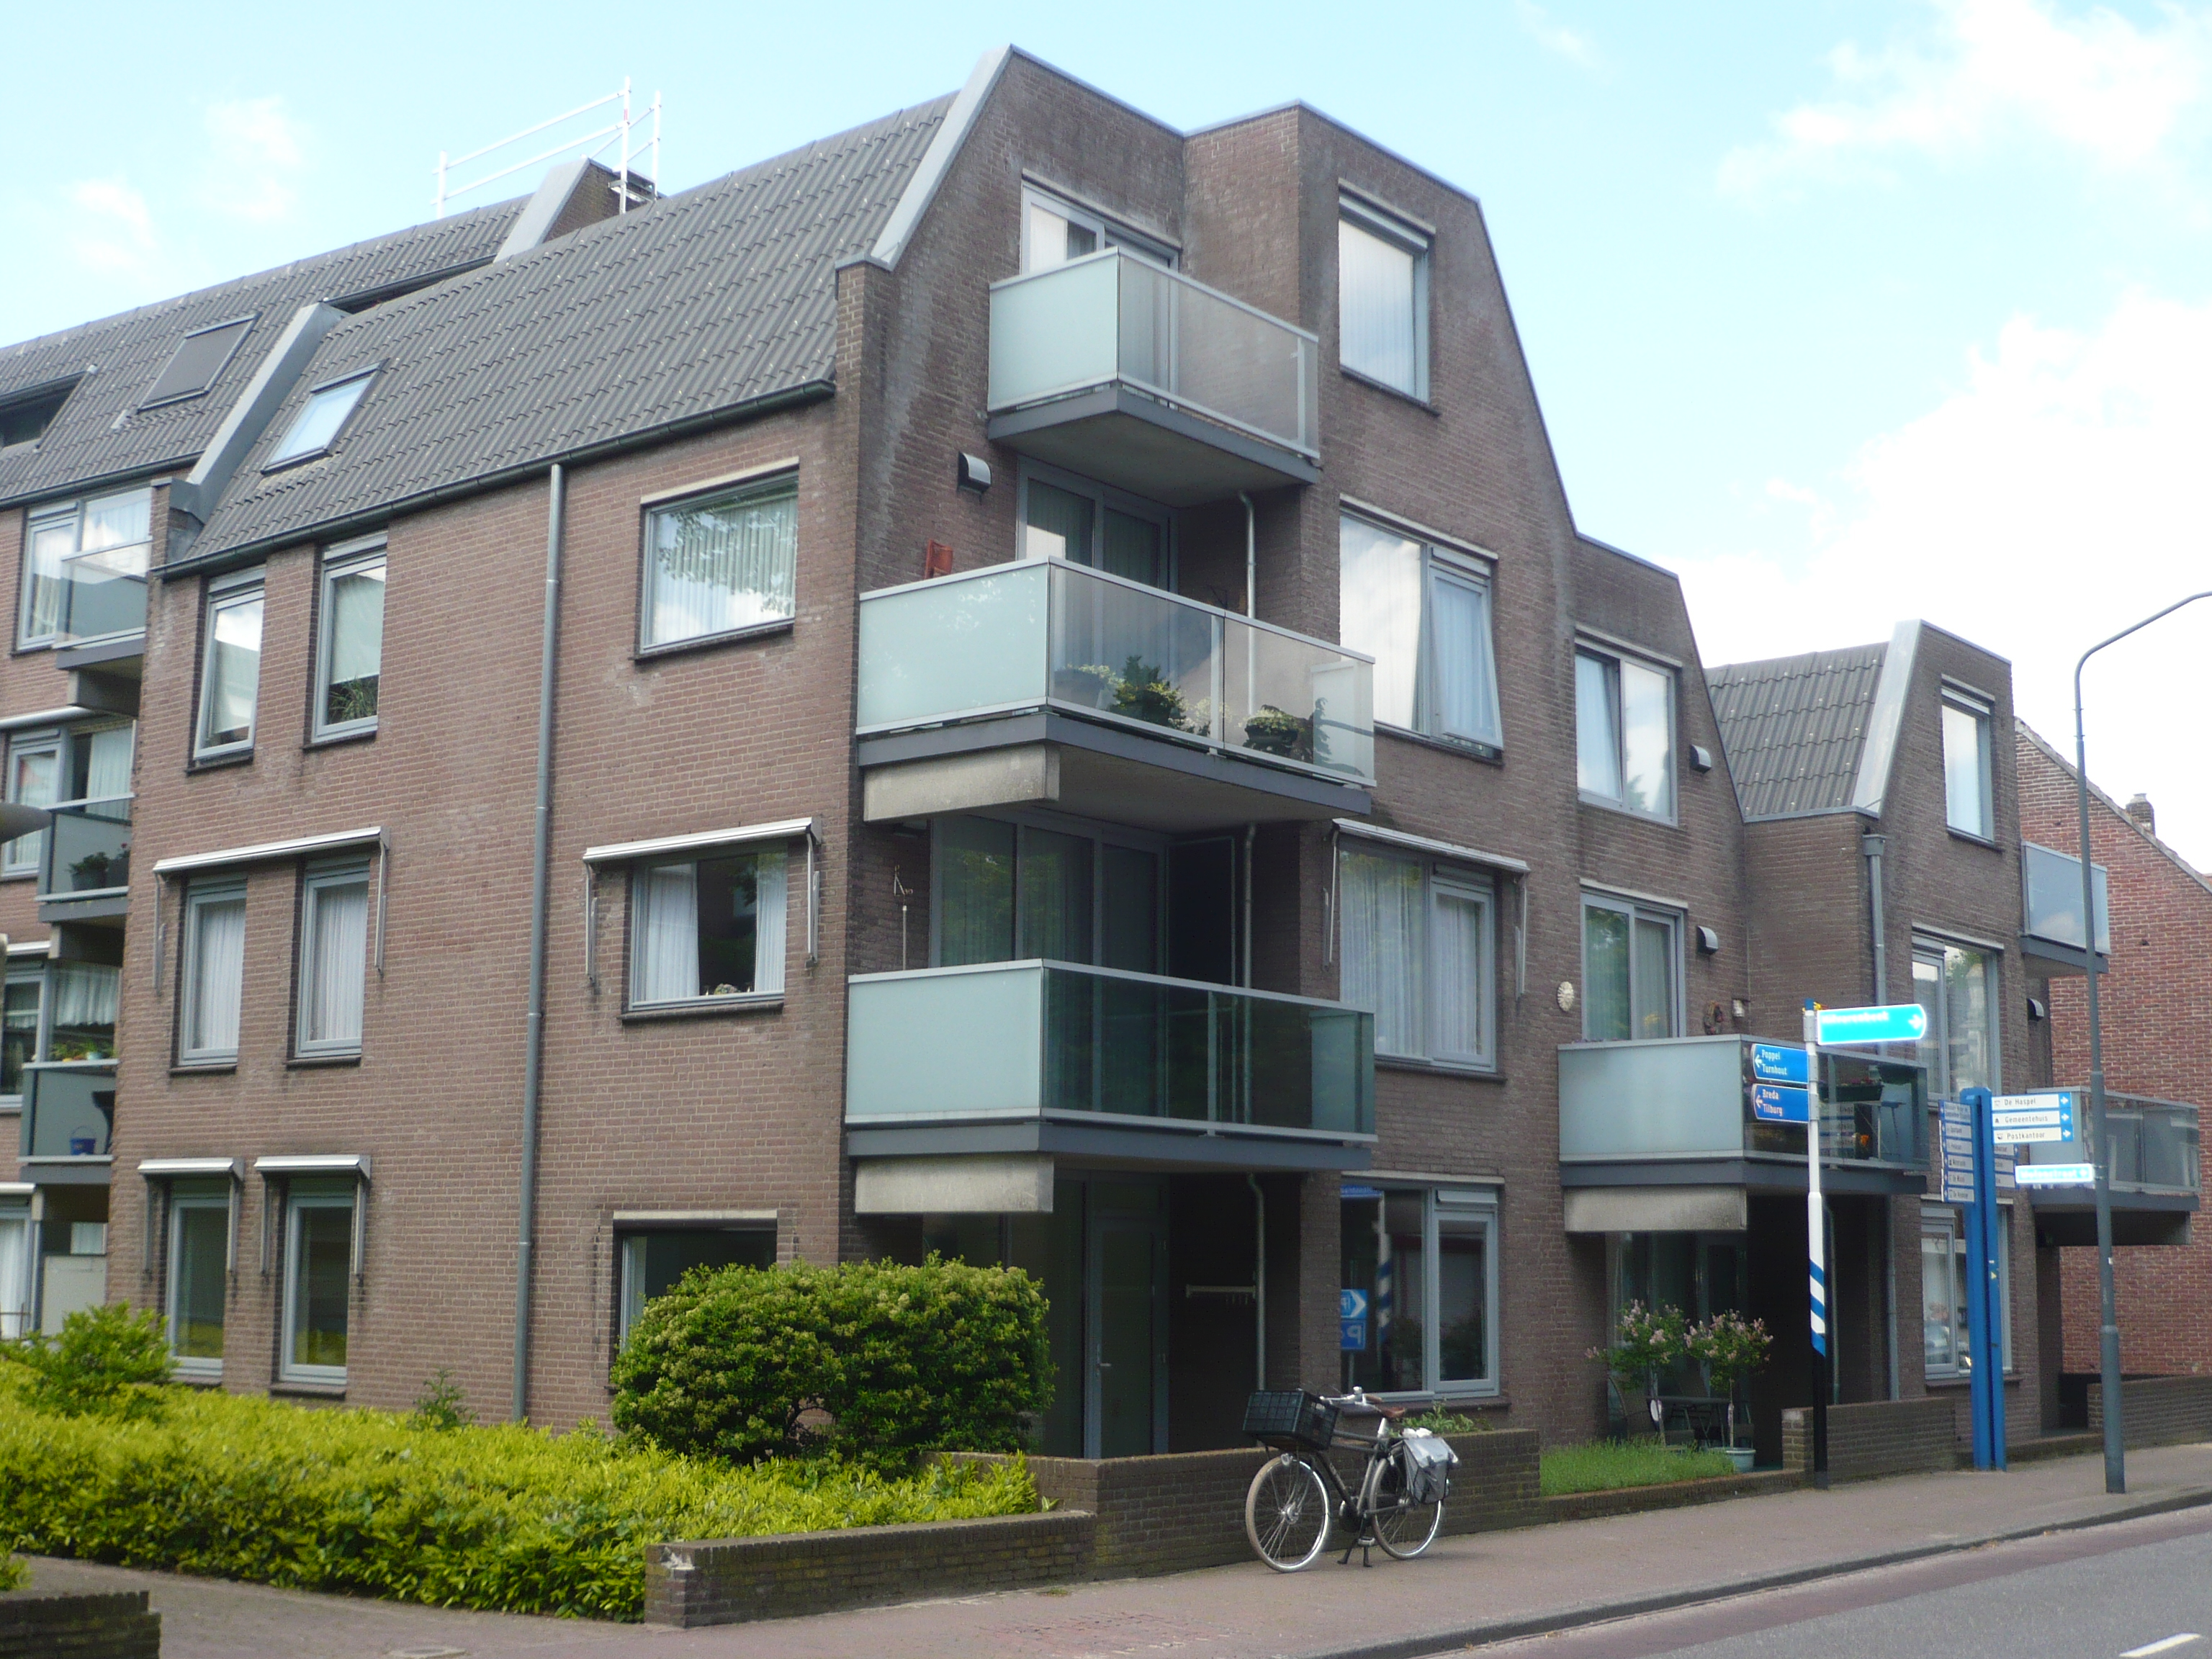 Nieuwstraat 14, 5051 NS Goirle, Nederland